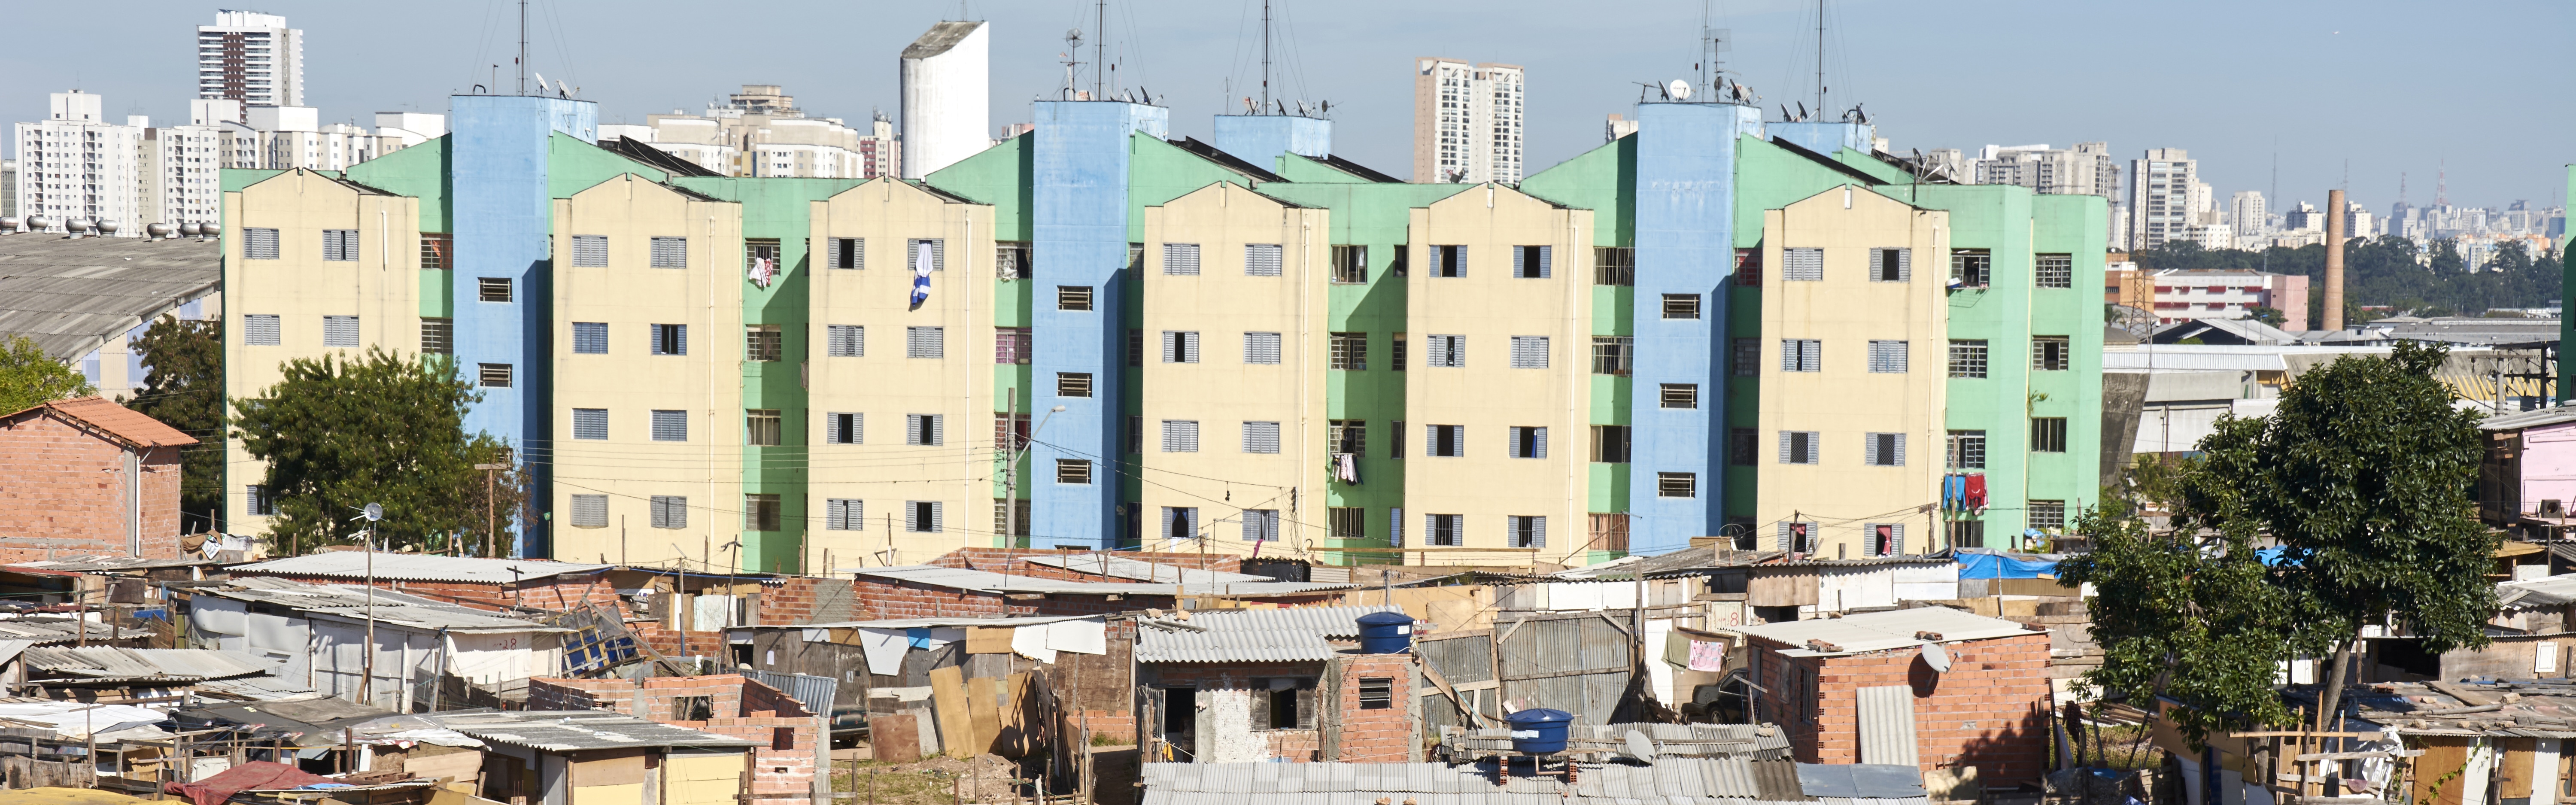 Maioria dos municípios brasileiros não tem plano para habitação, aponta IBGE